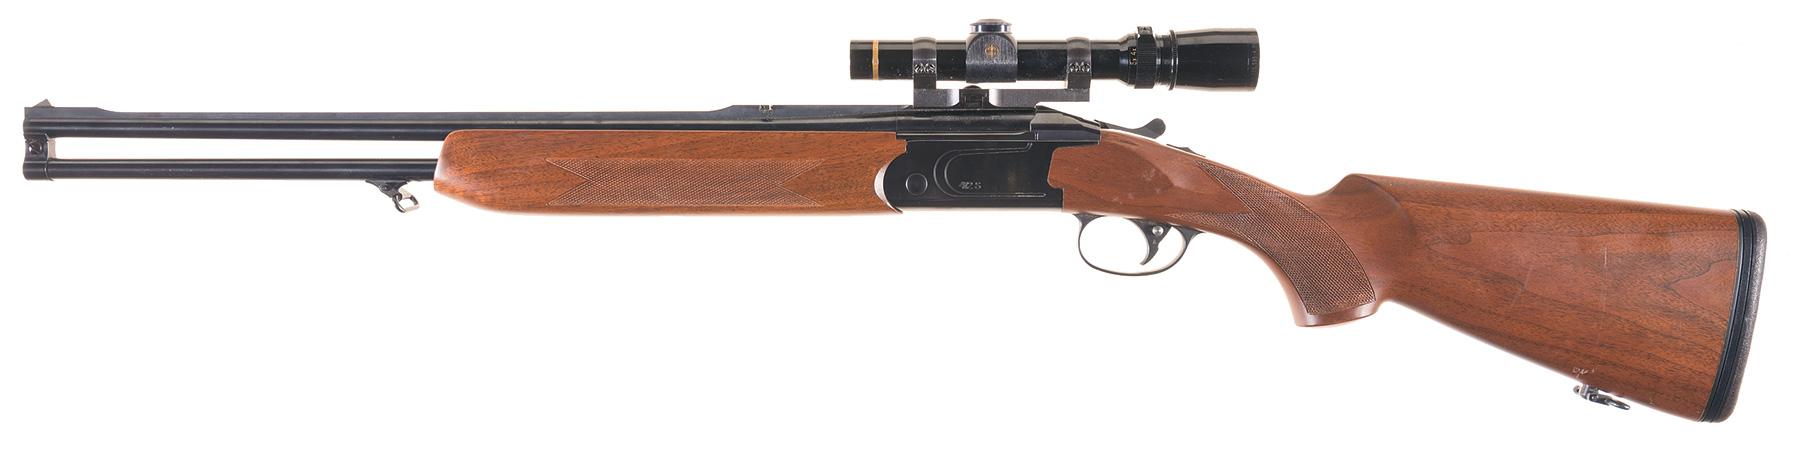 Valmet Model 412S double rifle